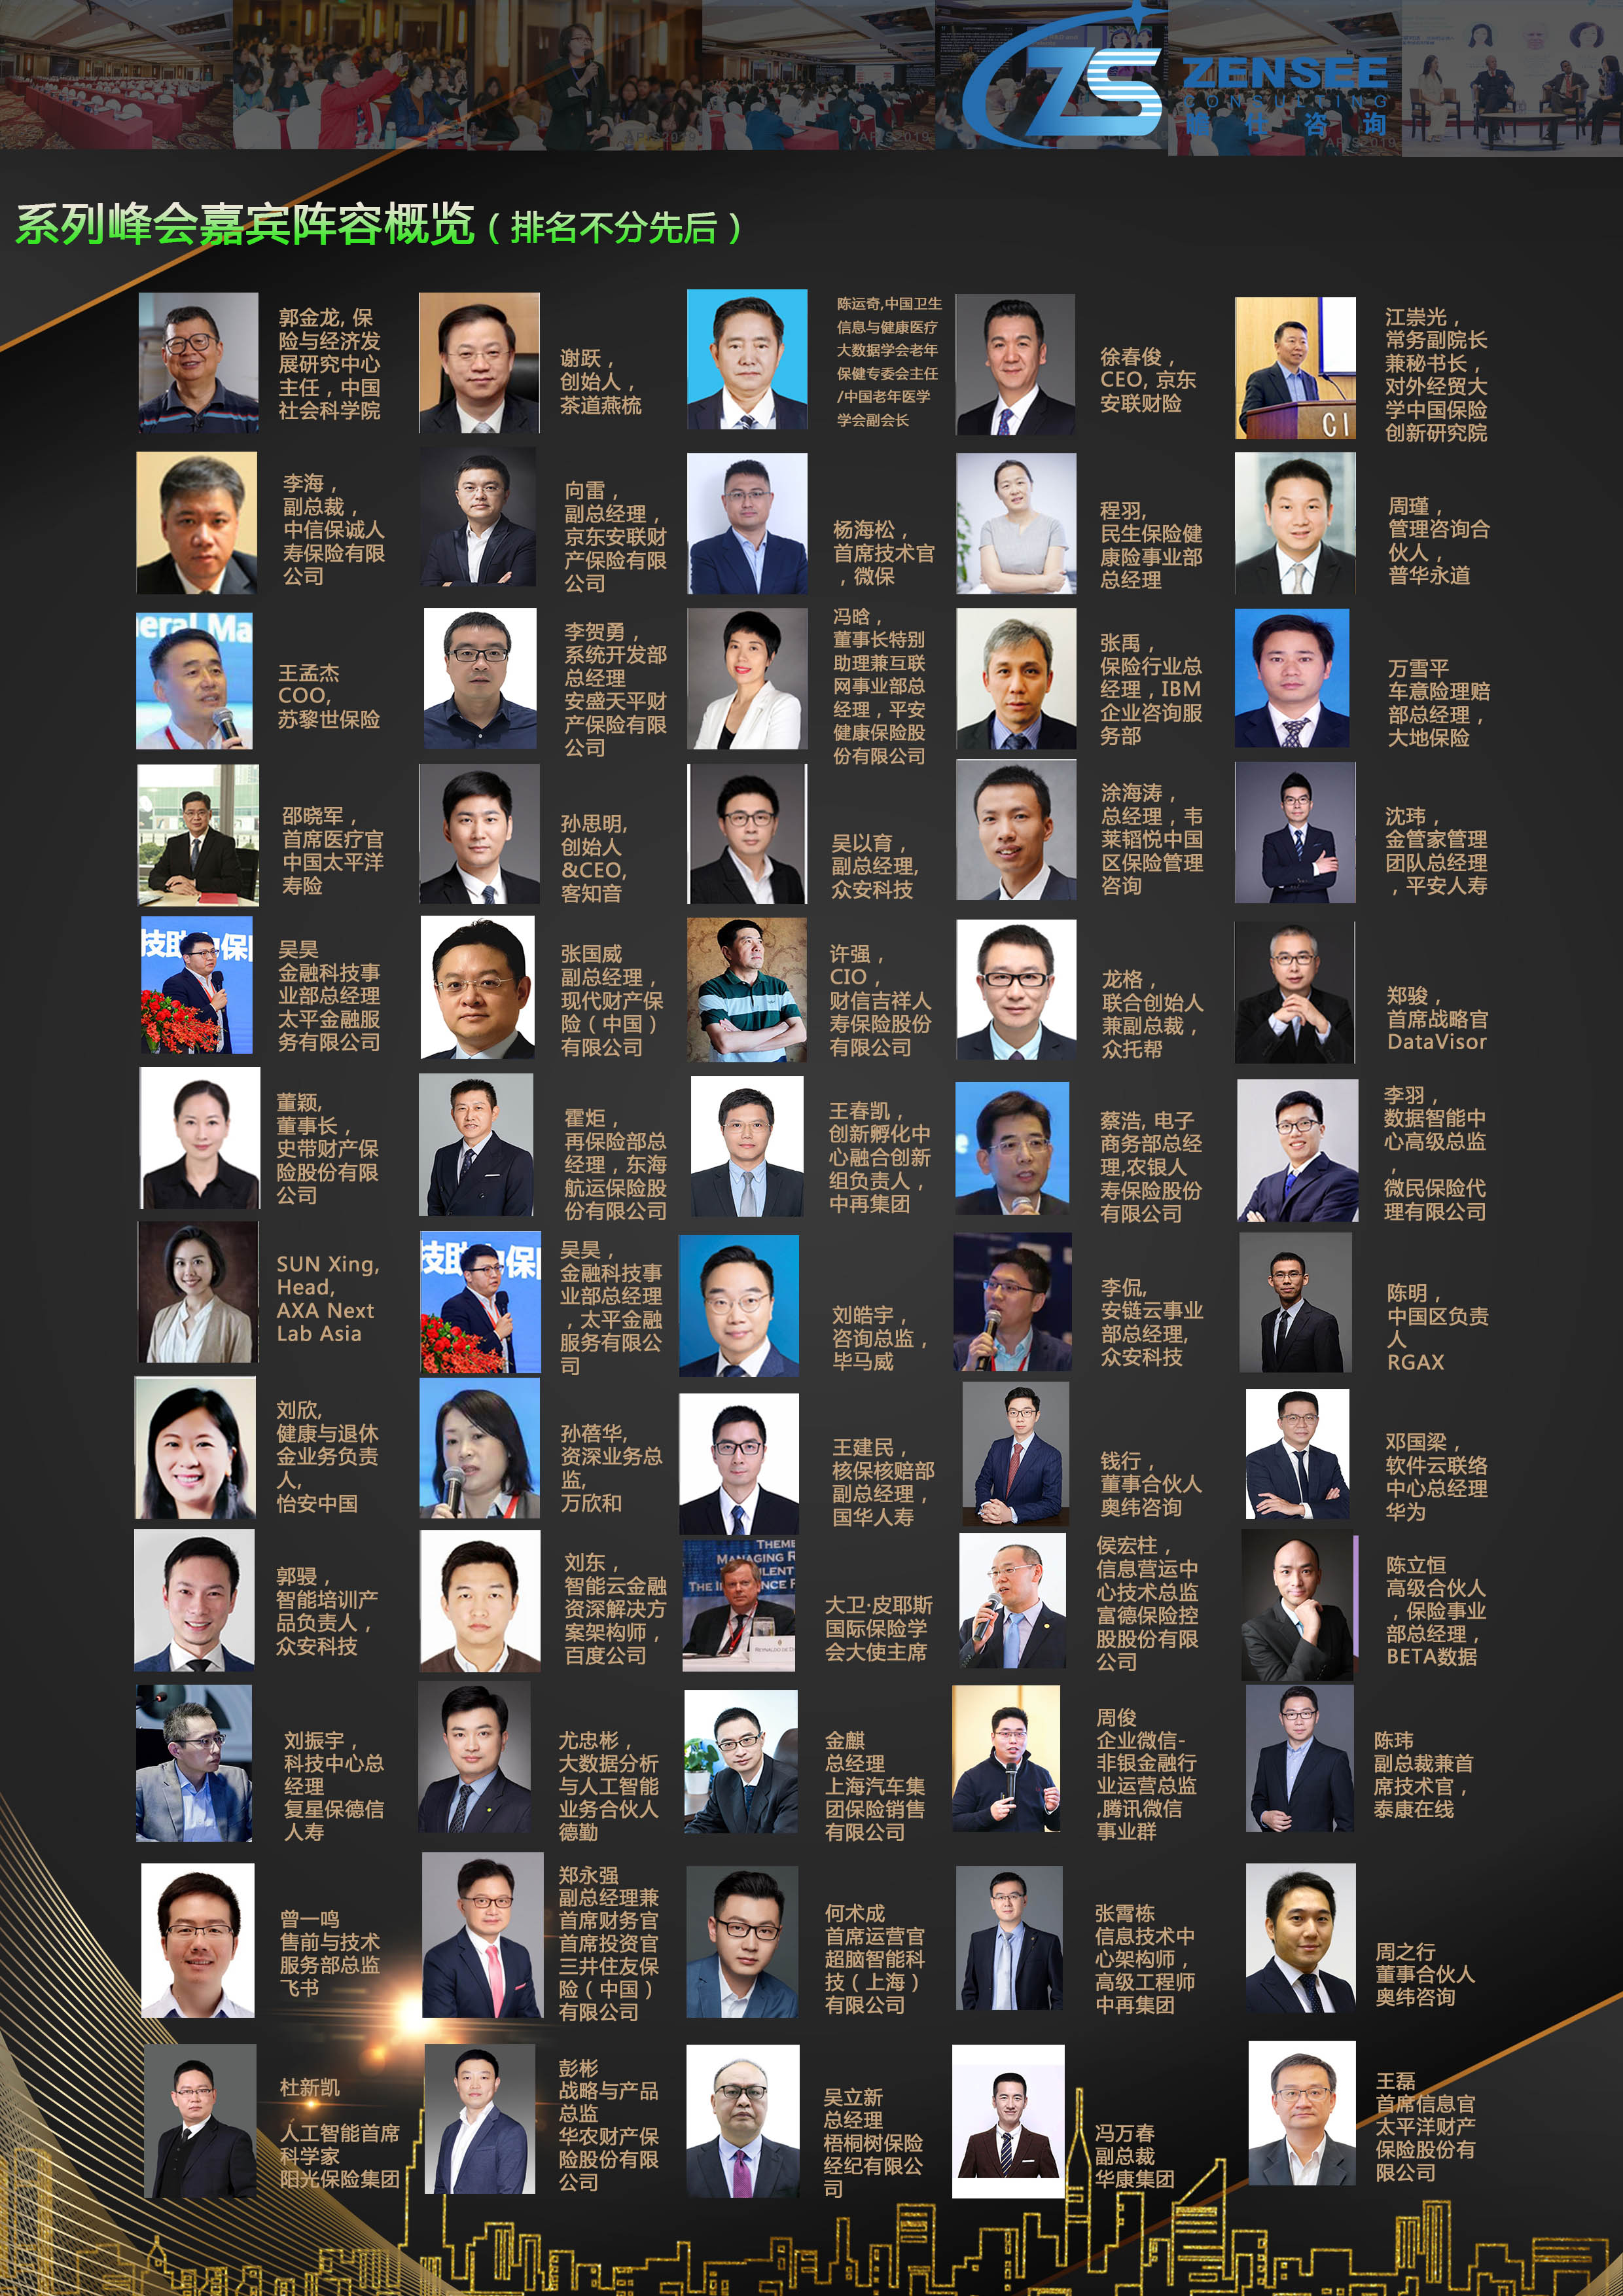 2023第五屆中國保險業數字化與人工智能發展大會暨“金保獎”頒獎典禮